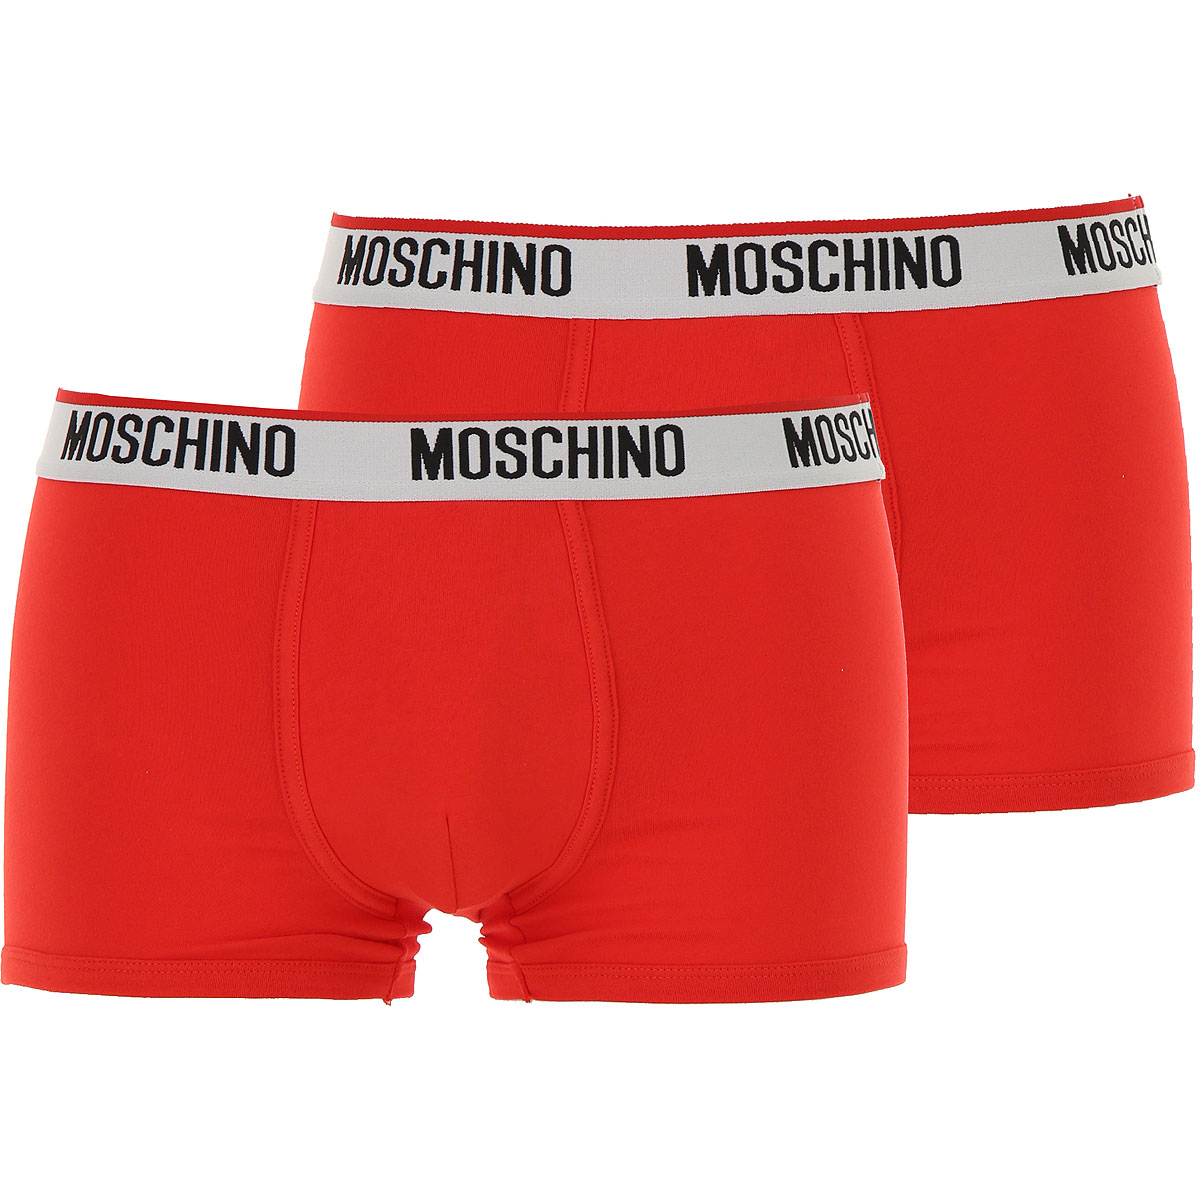 Moschino Boxer Shorts für Herren, Unterhose, Short, Boxer Günstig im Sale, 2 Pack, Rot, Baumwolle, 2017, S XS